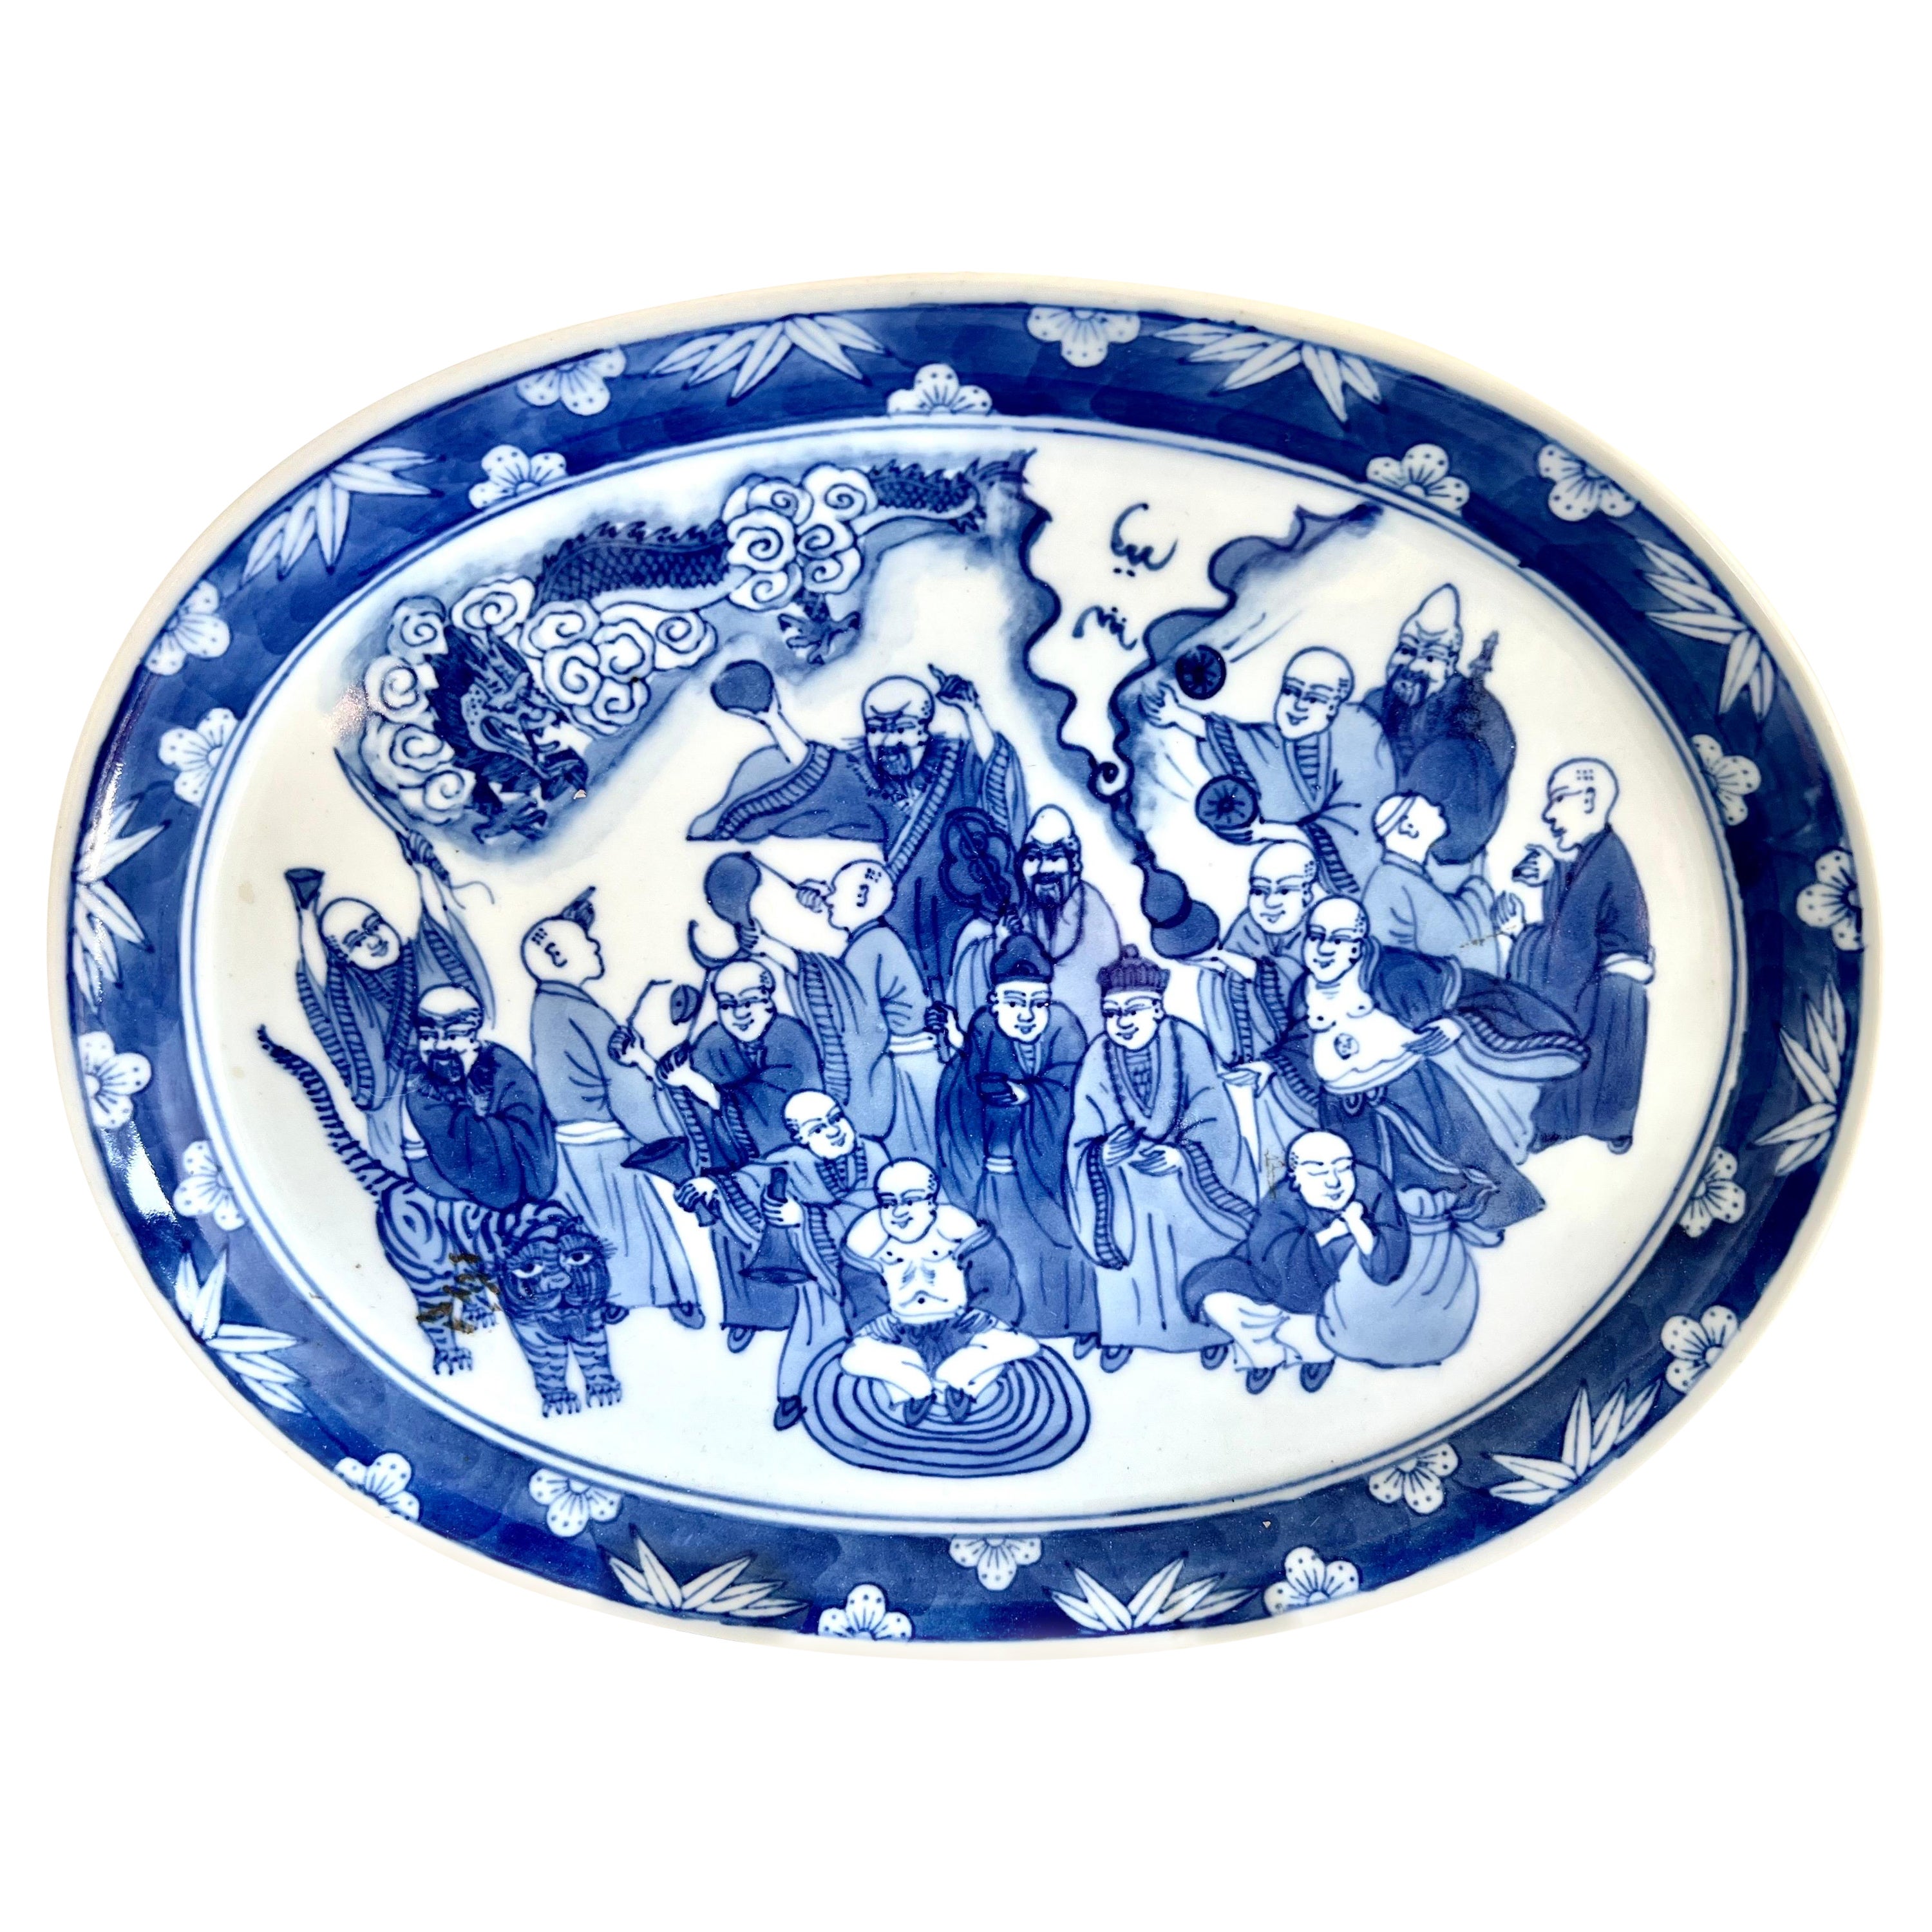 Blau-weiße chinesische Exportplatte aus dem 19. Jahrhundert